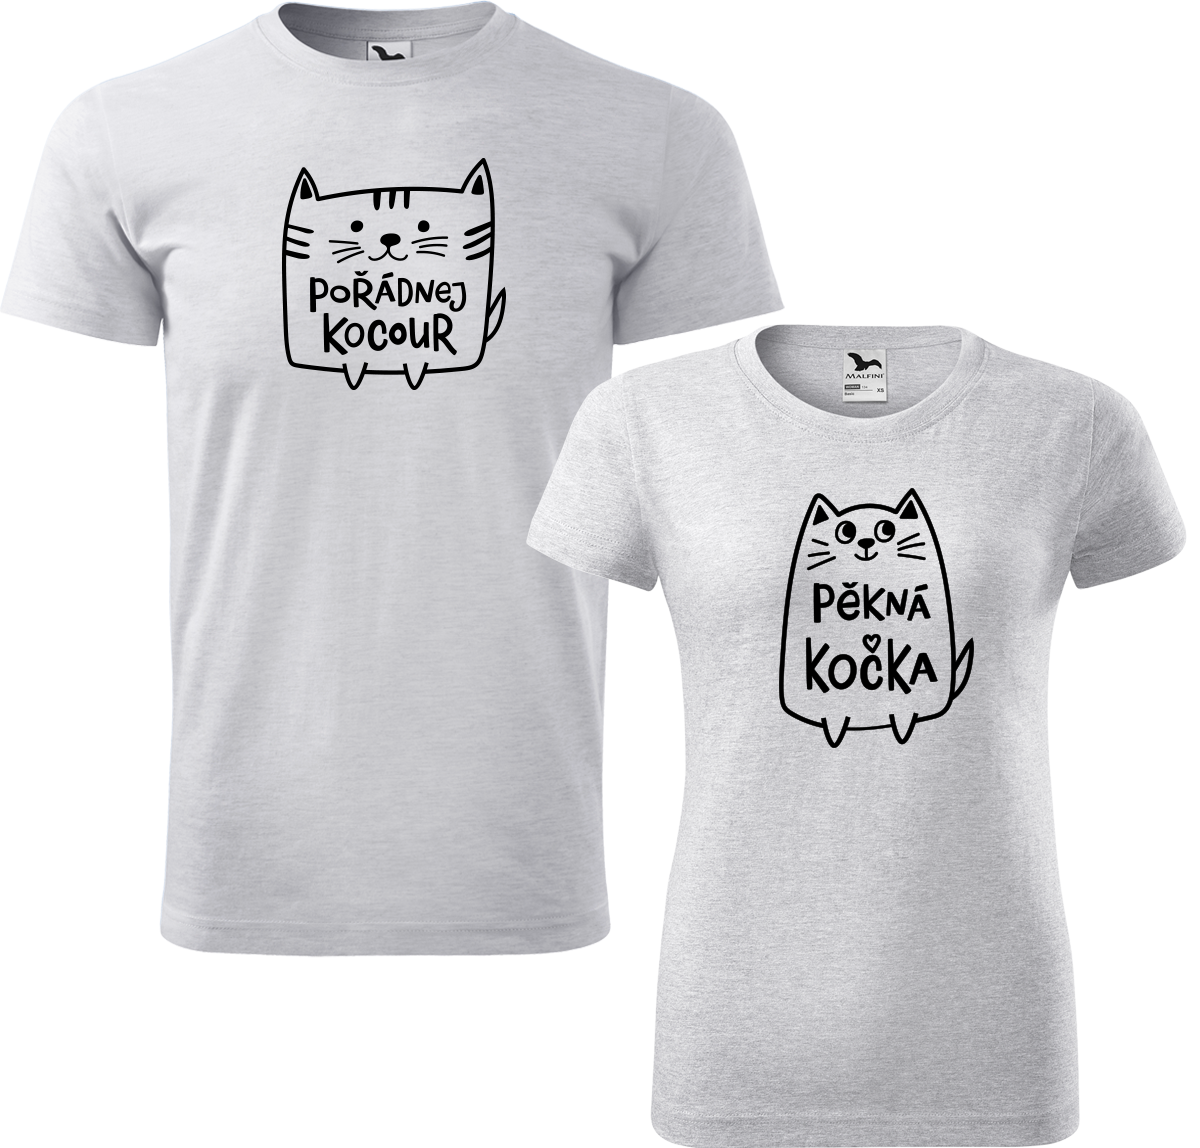 Trička pro páry - Pořádnej kocour a pěkná kočka Barva: Světle šedý melír (03), Velikost dámské tričko: L, Velikost pánské tričko: L